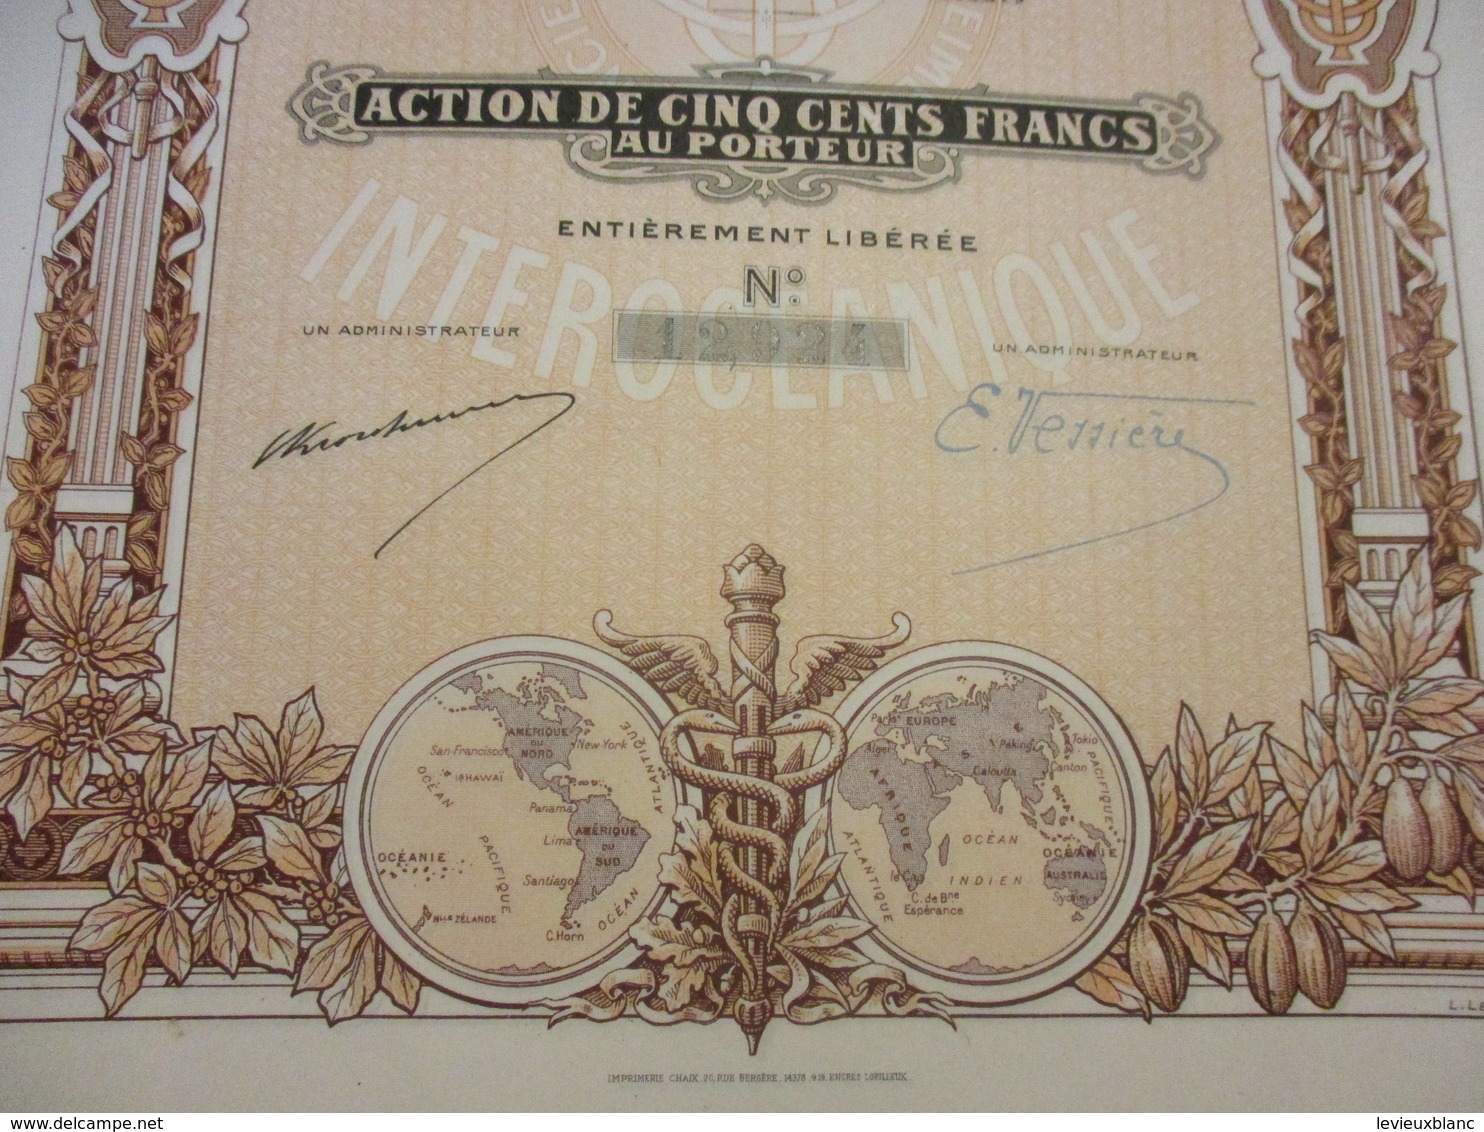 Action De 100 Francs  Au Porteur Entièrement Libérée/Aerocrete SA France Matériaux Modernes De Construction/1927  ACT228 - Industry